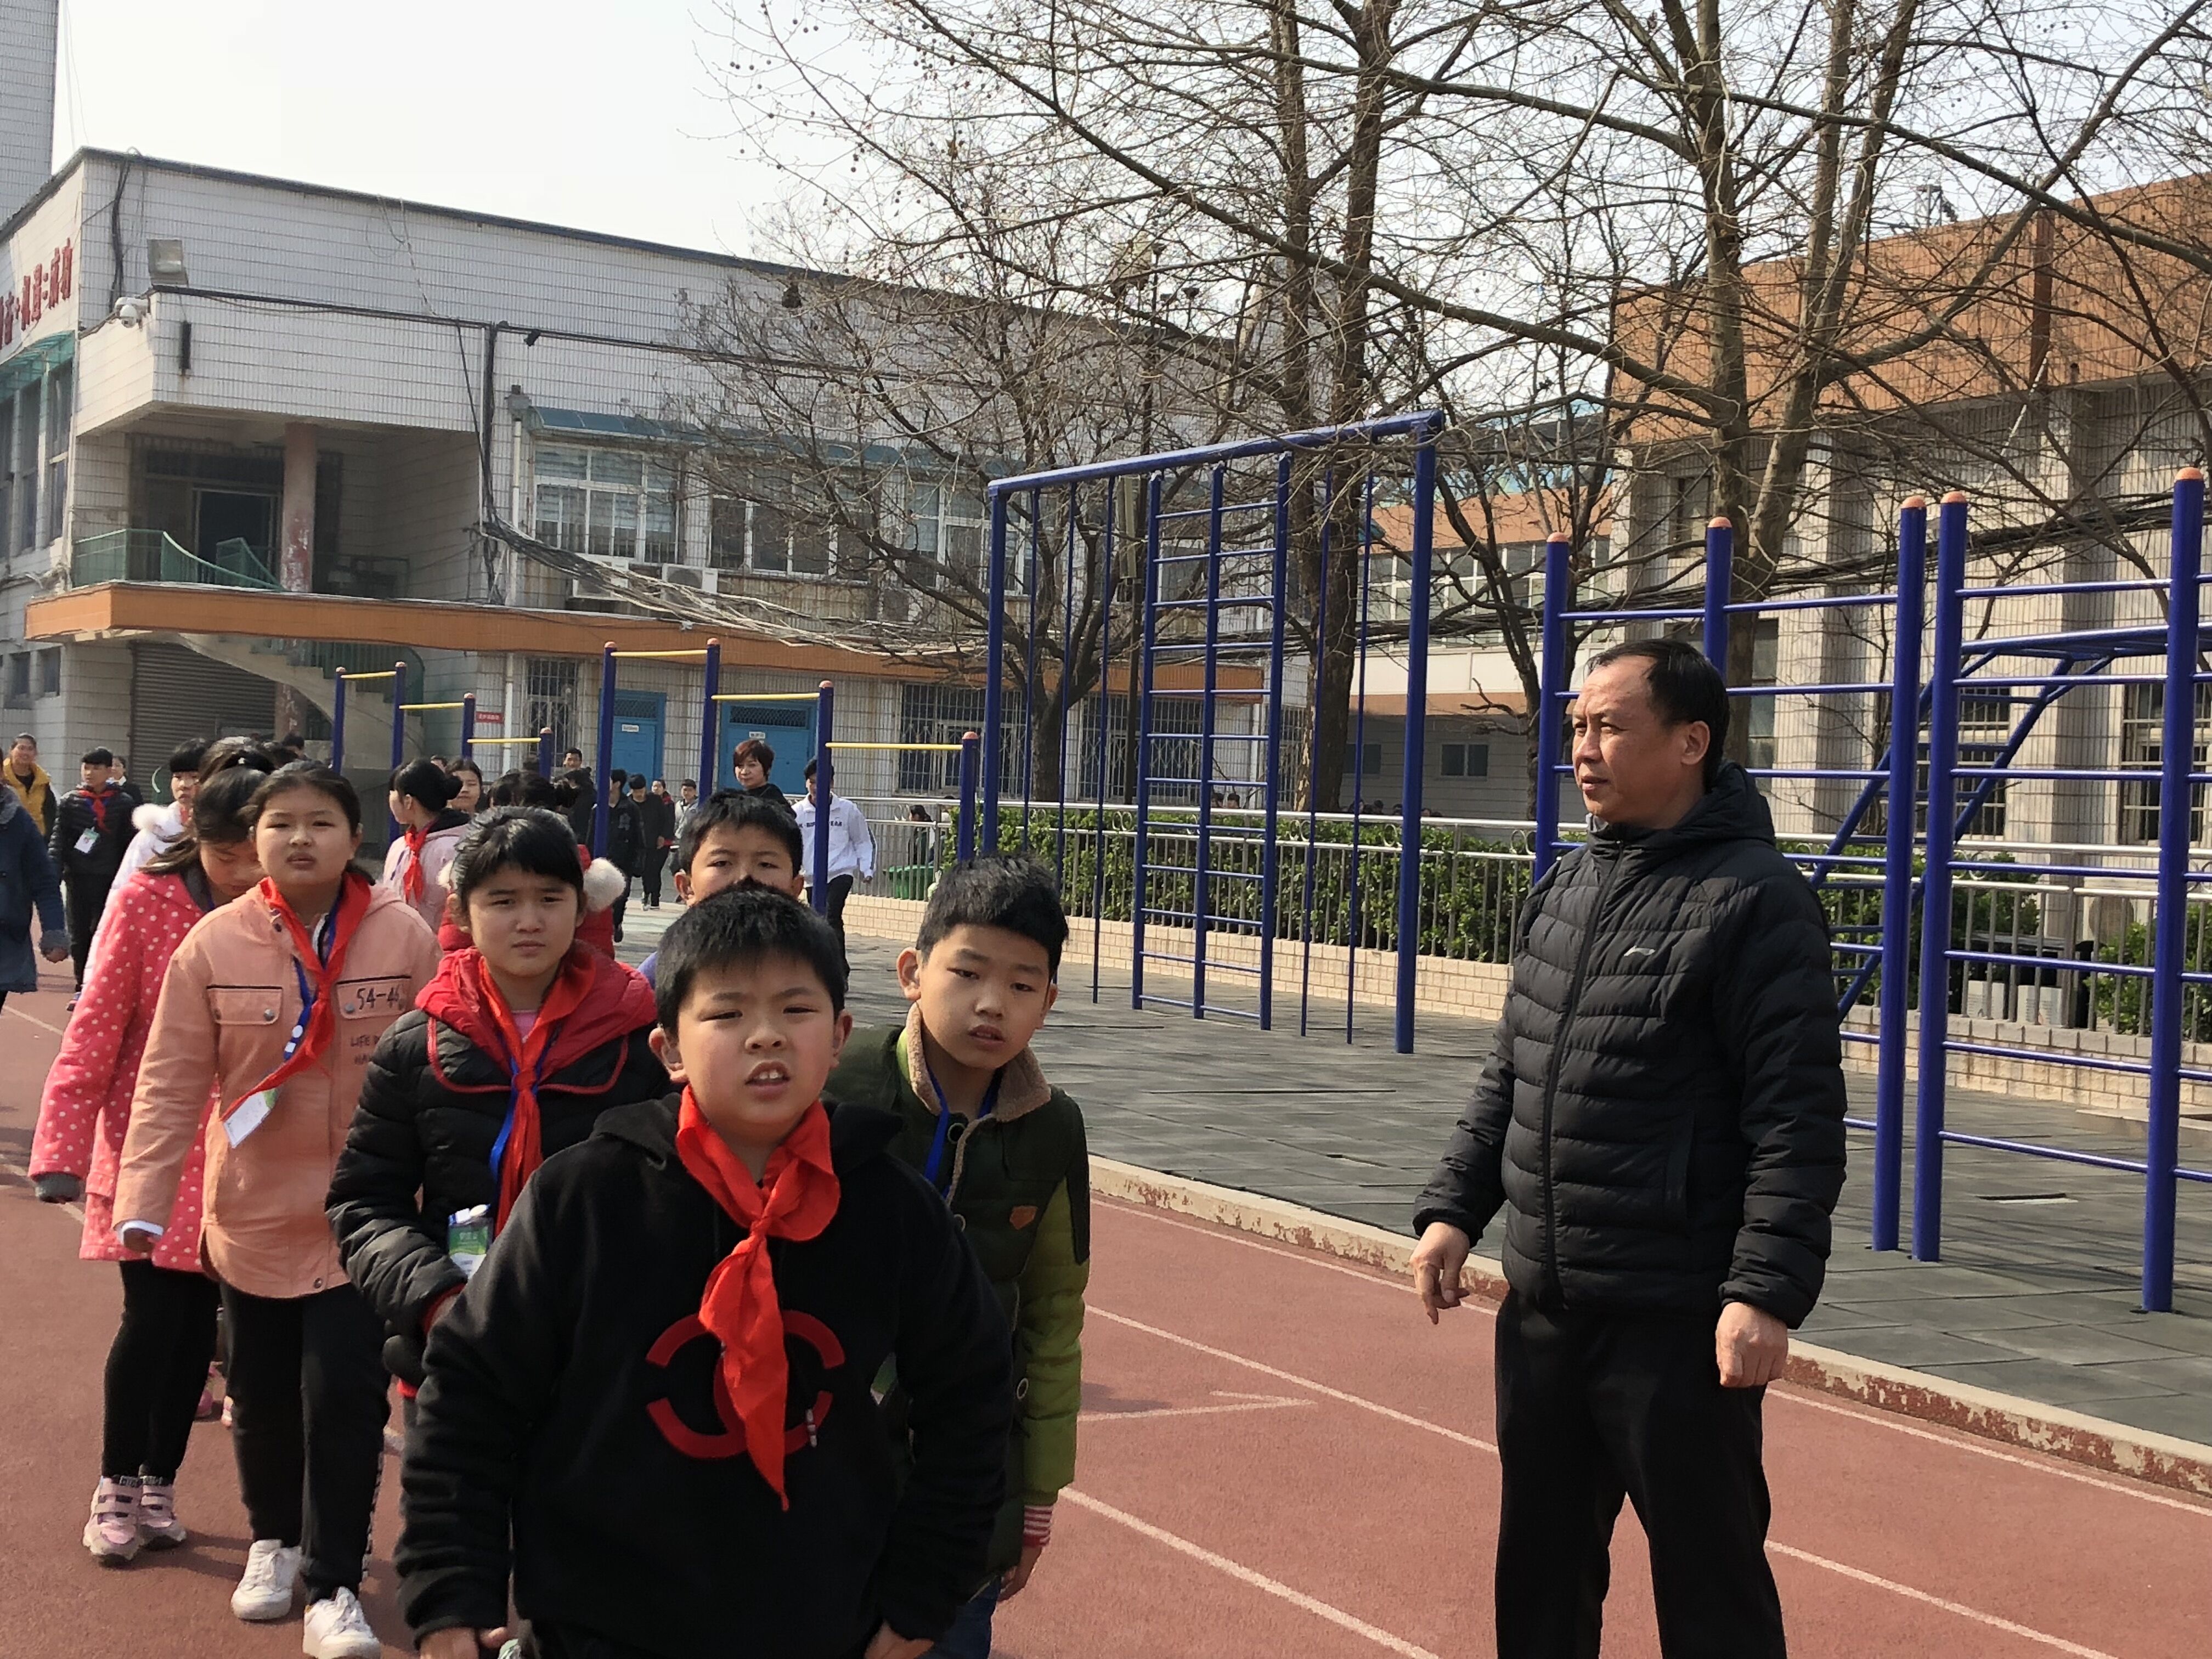 郑州市盲聋哑学校多措并举,打造平安和谐校园